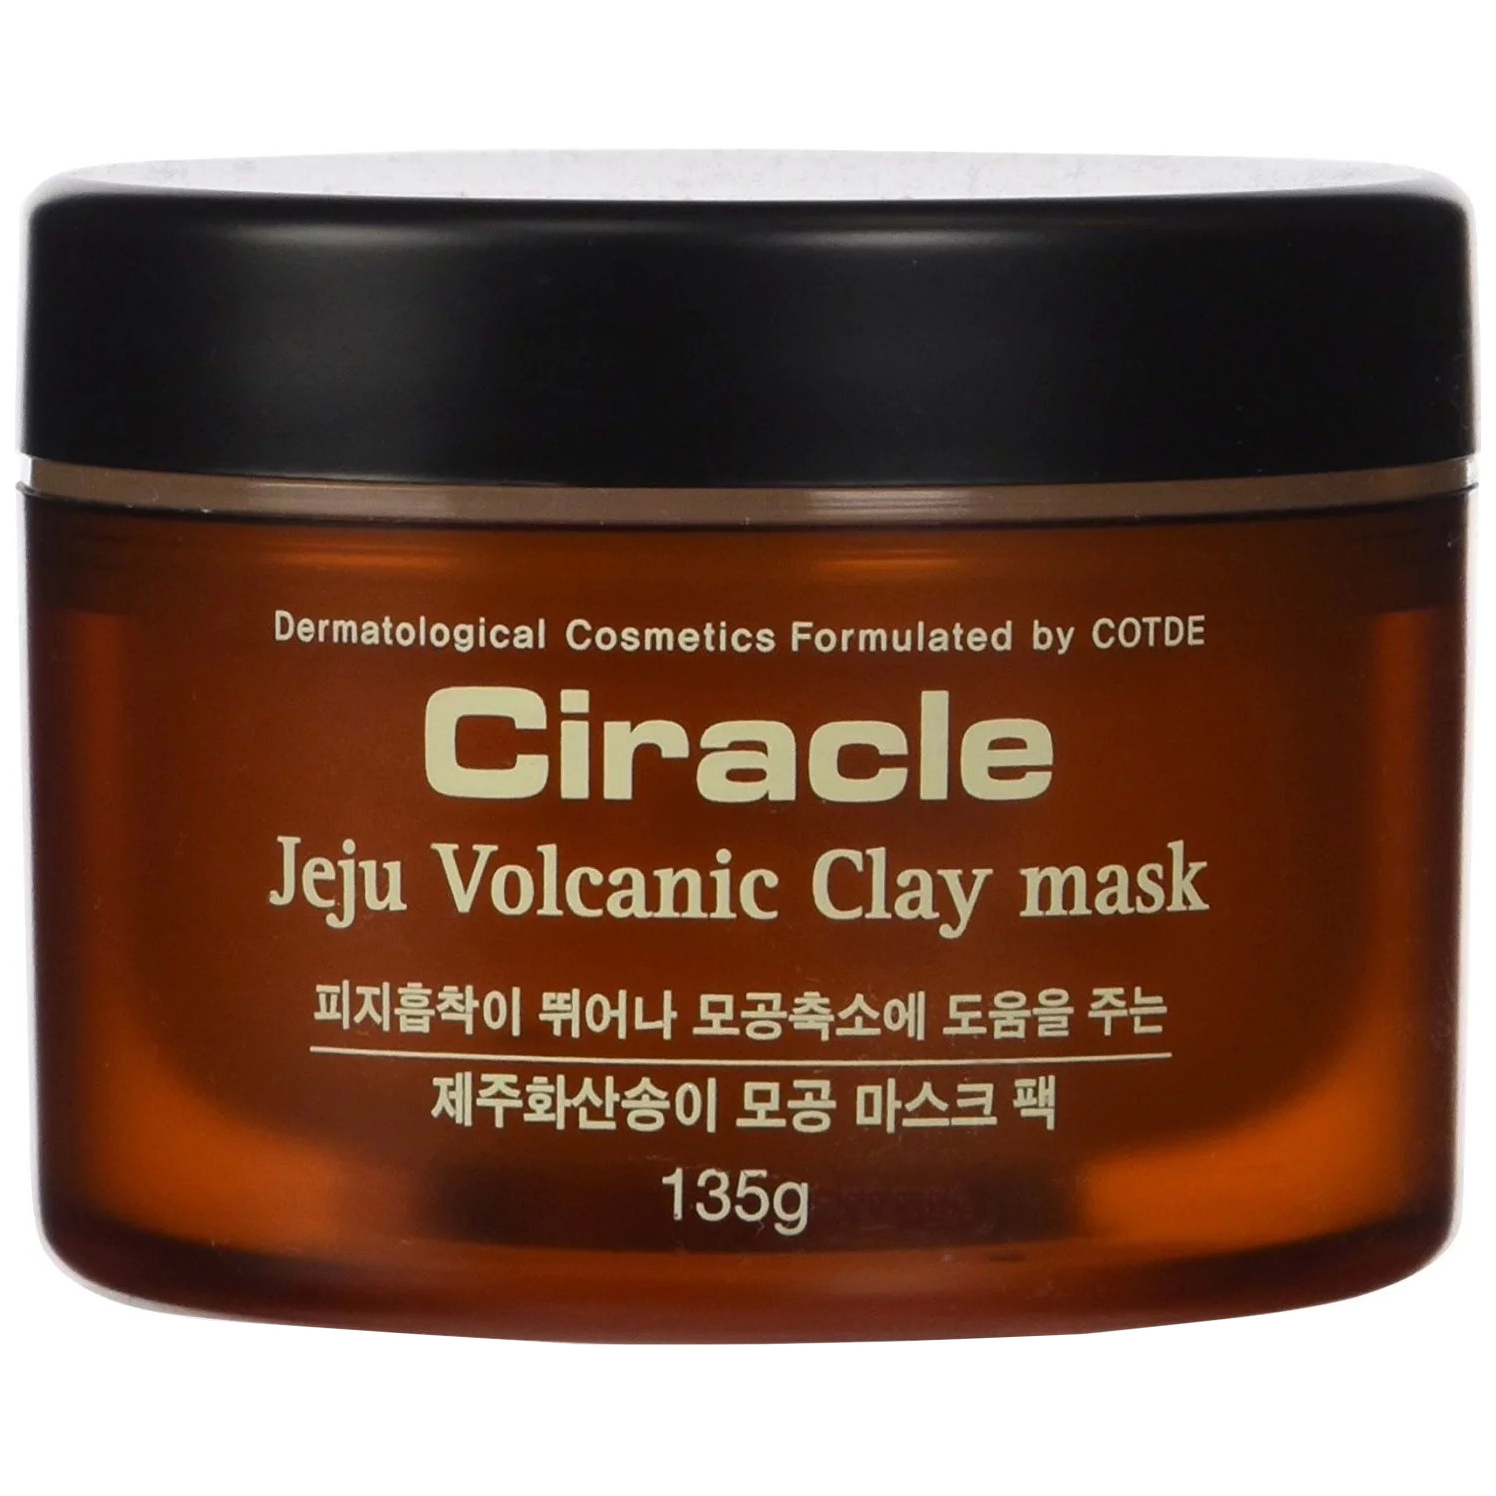 фото Маска для лица ciracle blackhead jeju volcanic clay mask 135 г